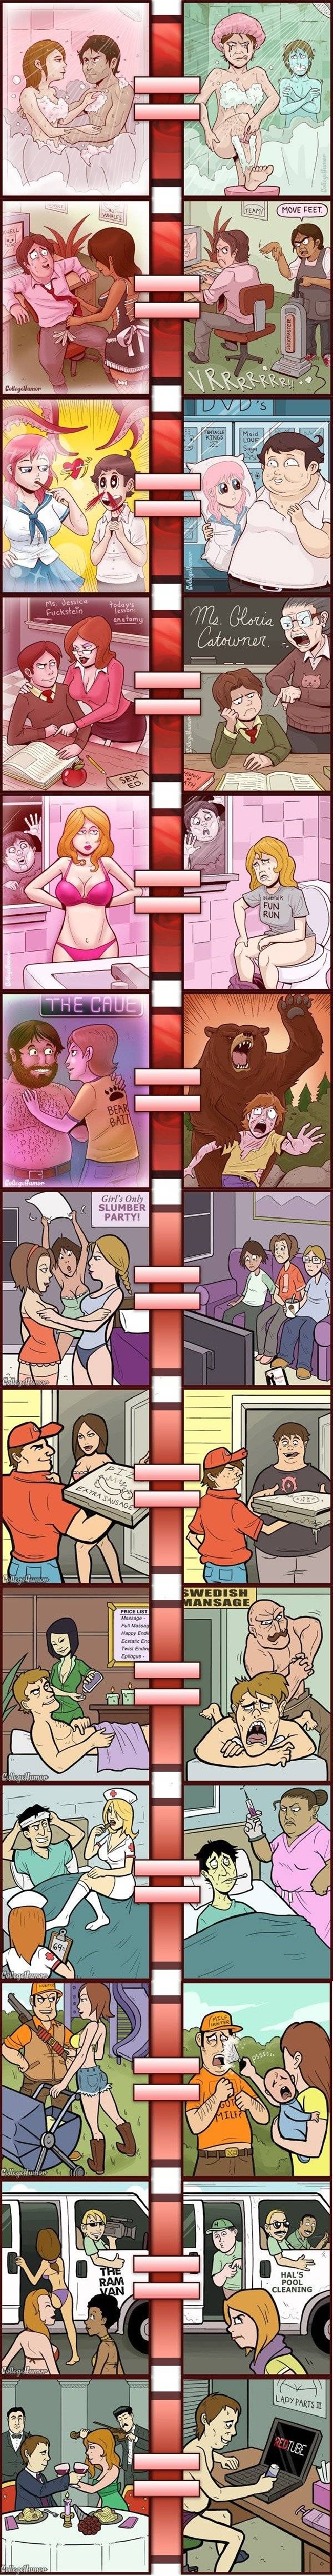 Porno vs het echte leven